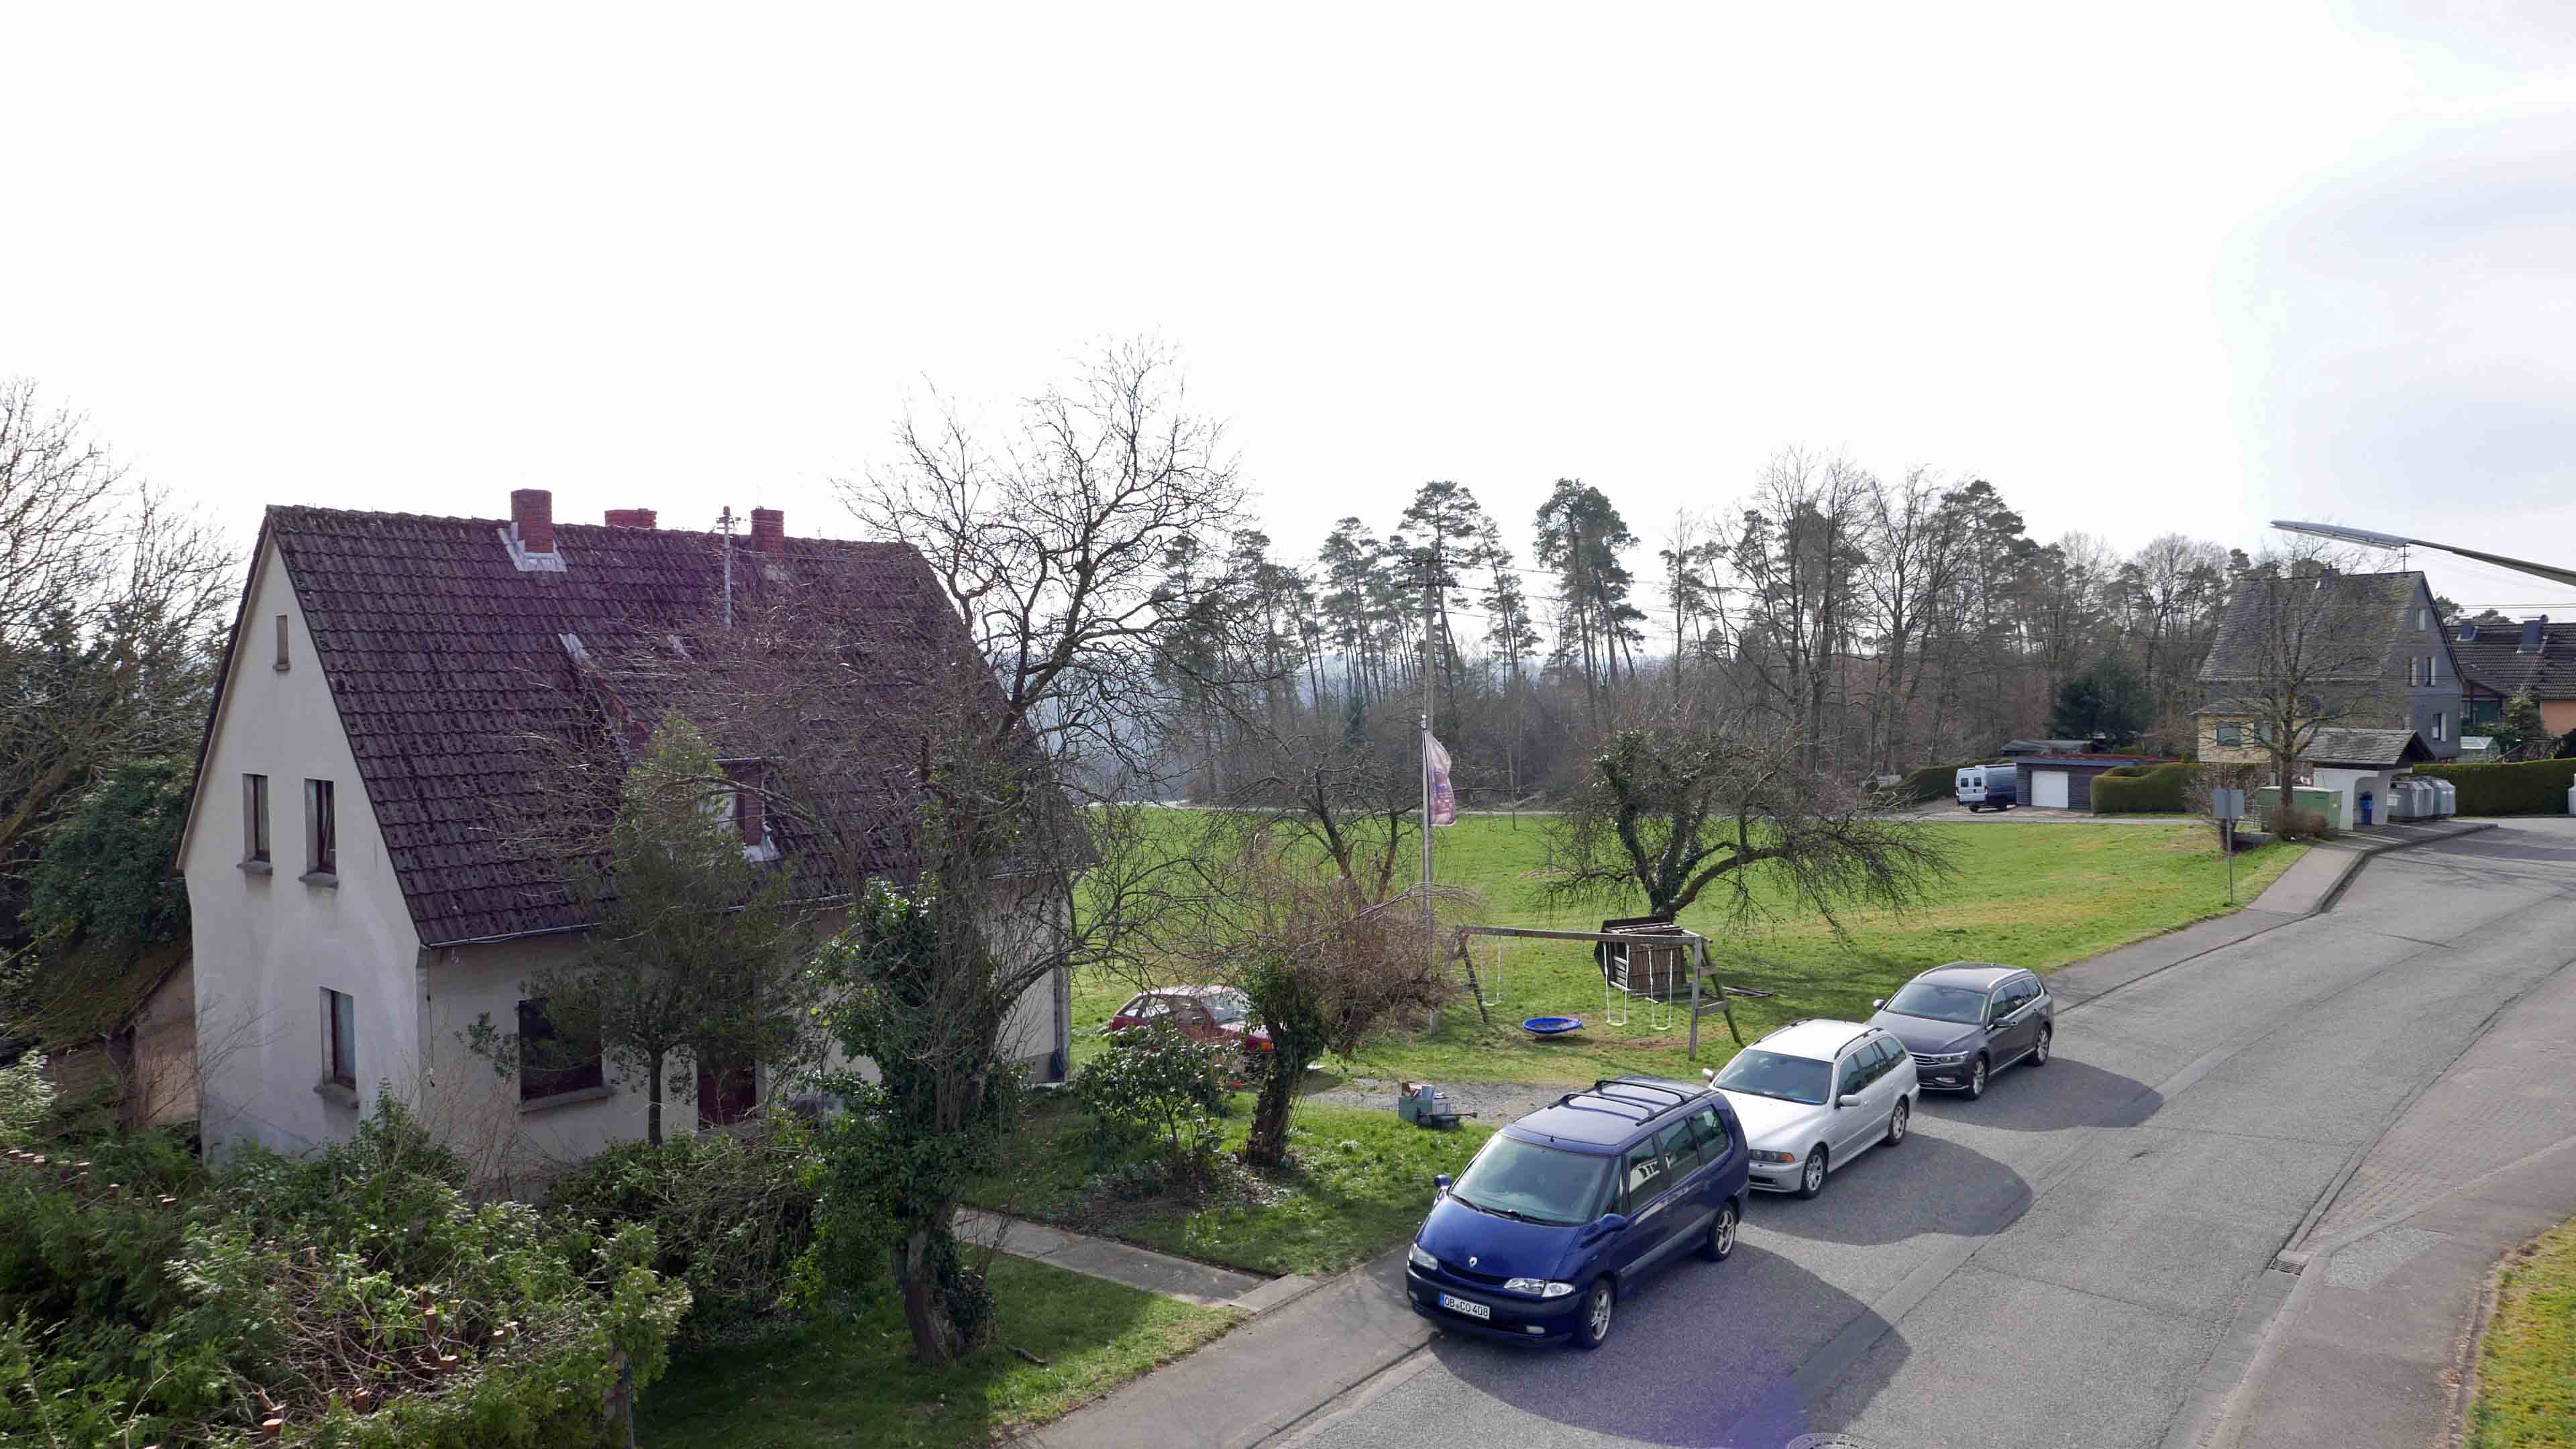 Birken-Honigsessen: Preiswertes Einfamilienhaus, an einer wenig befahrenen Straße gelegen